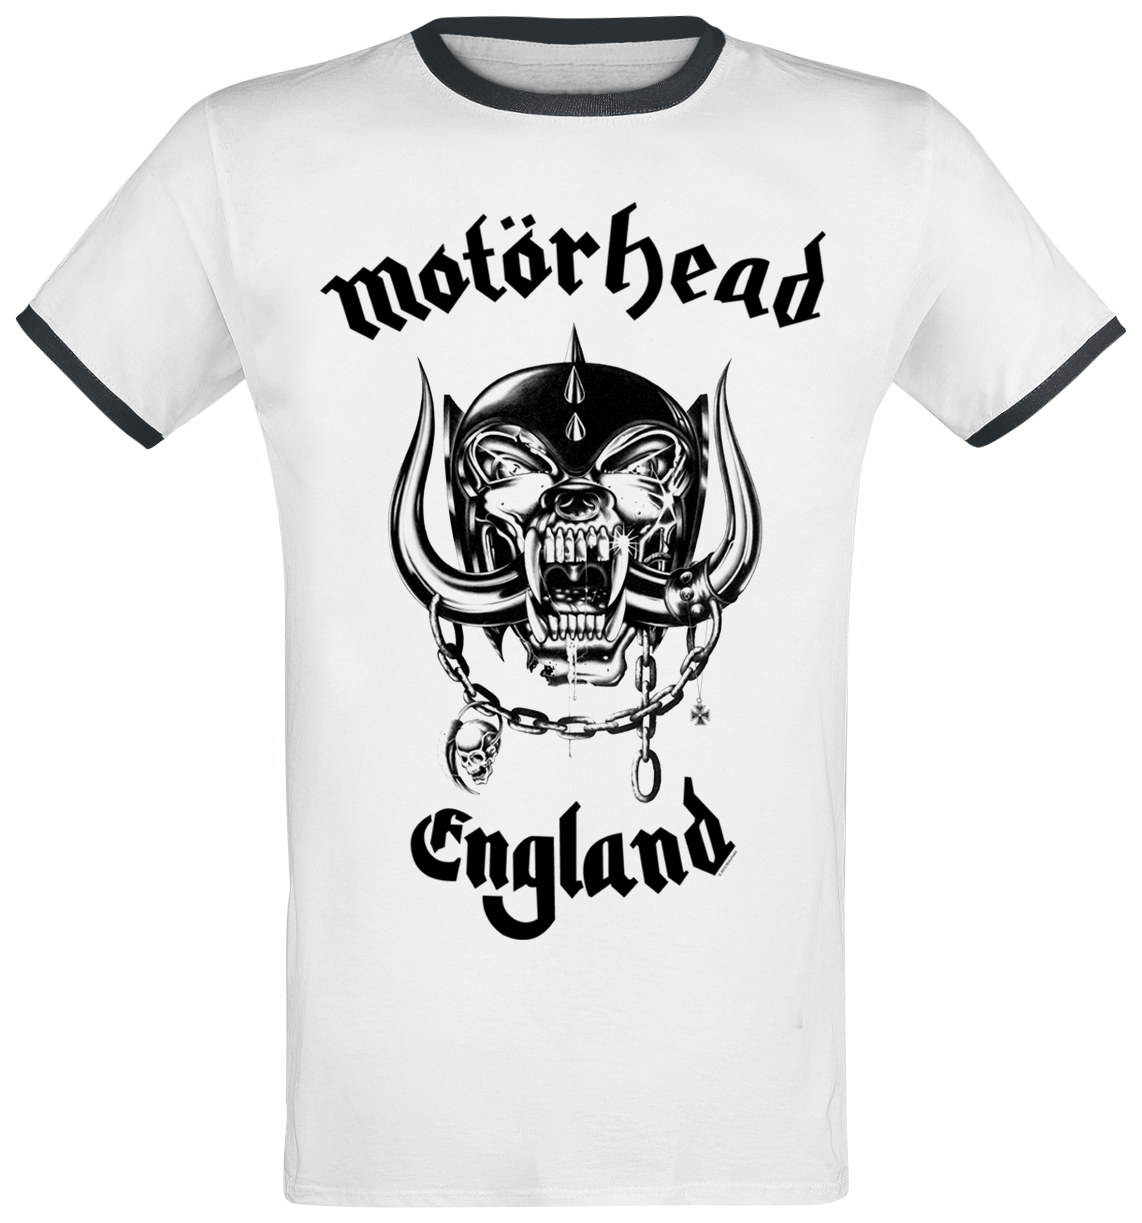 Motörhead - England - T-Shirt - weiß